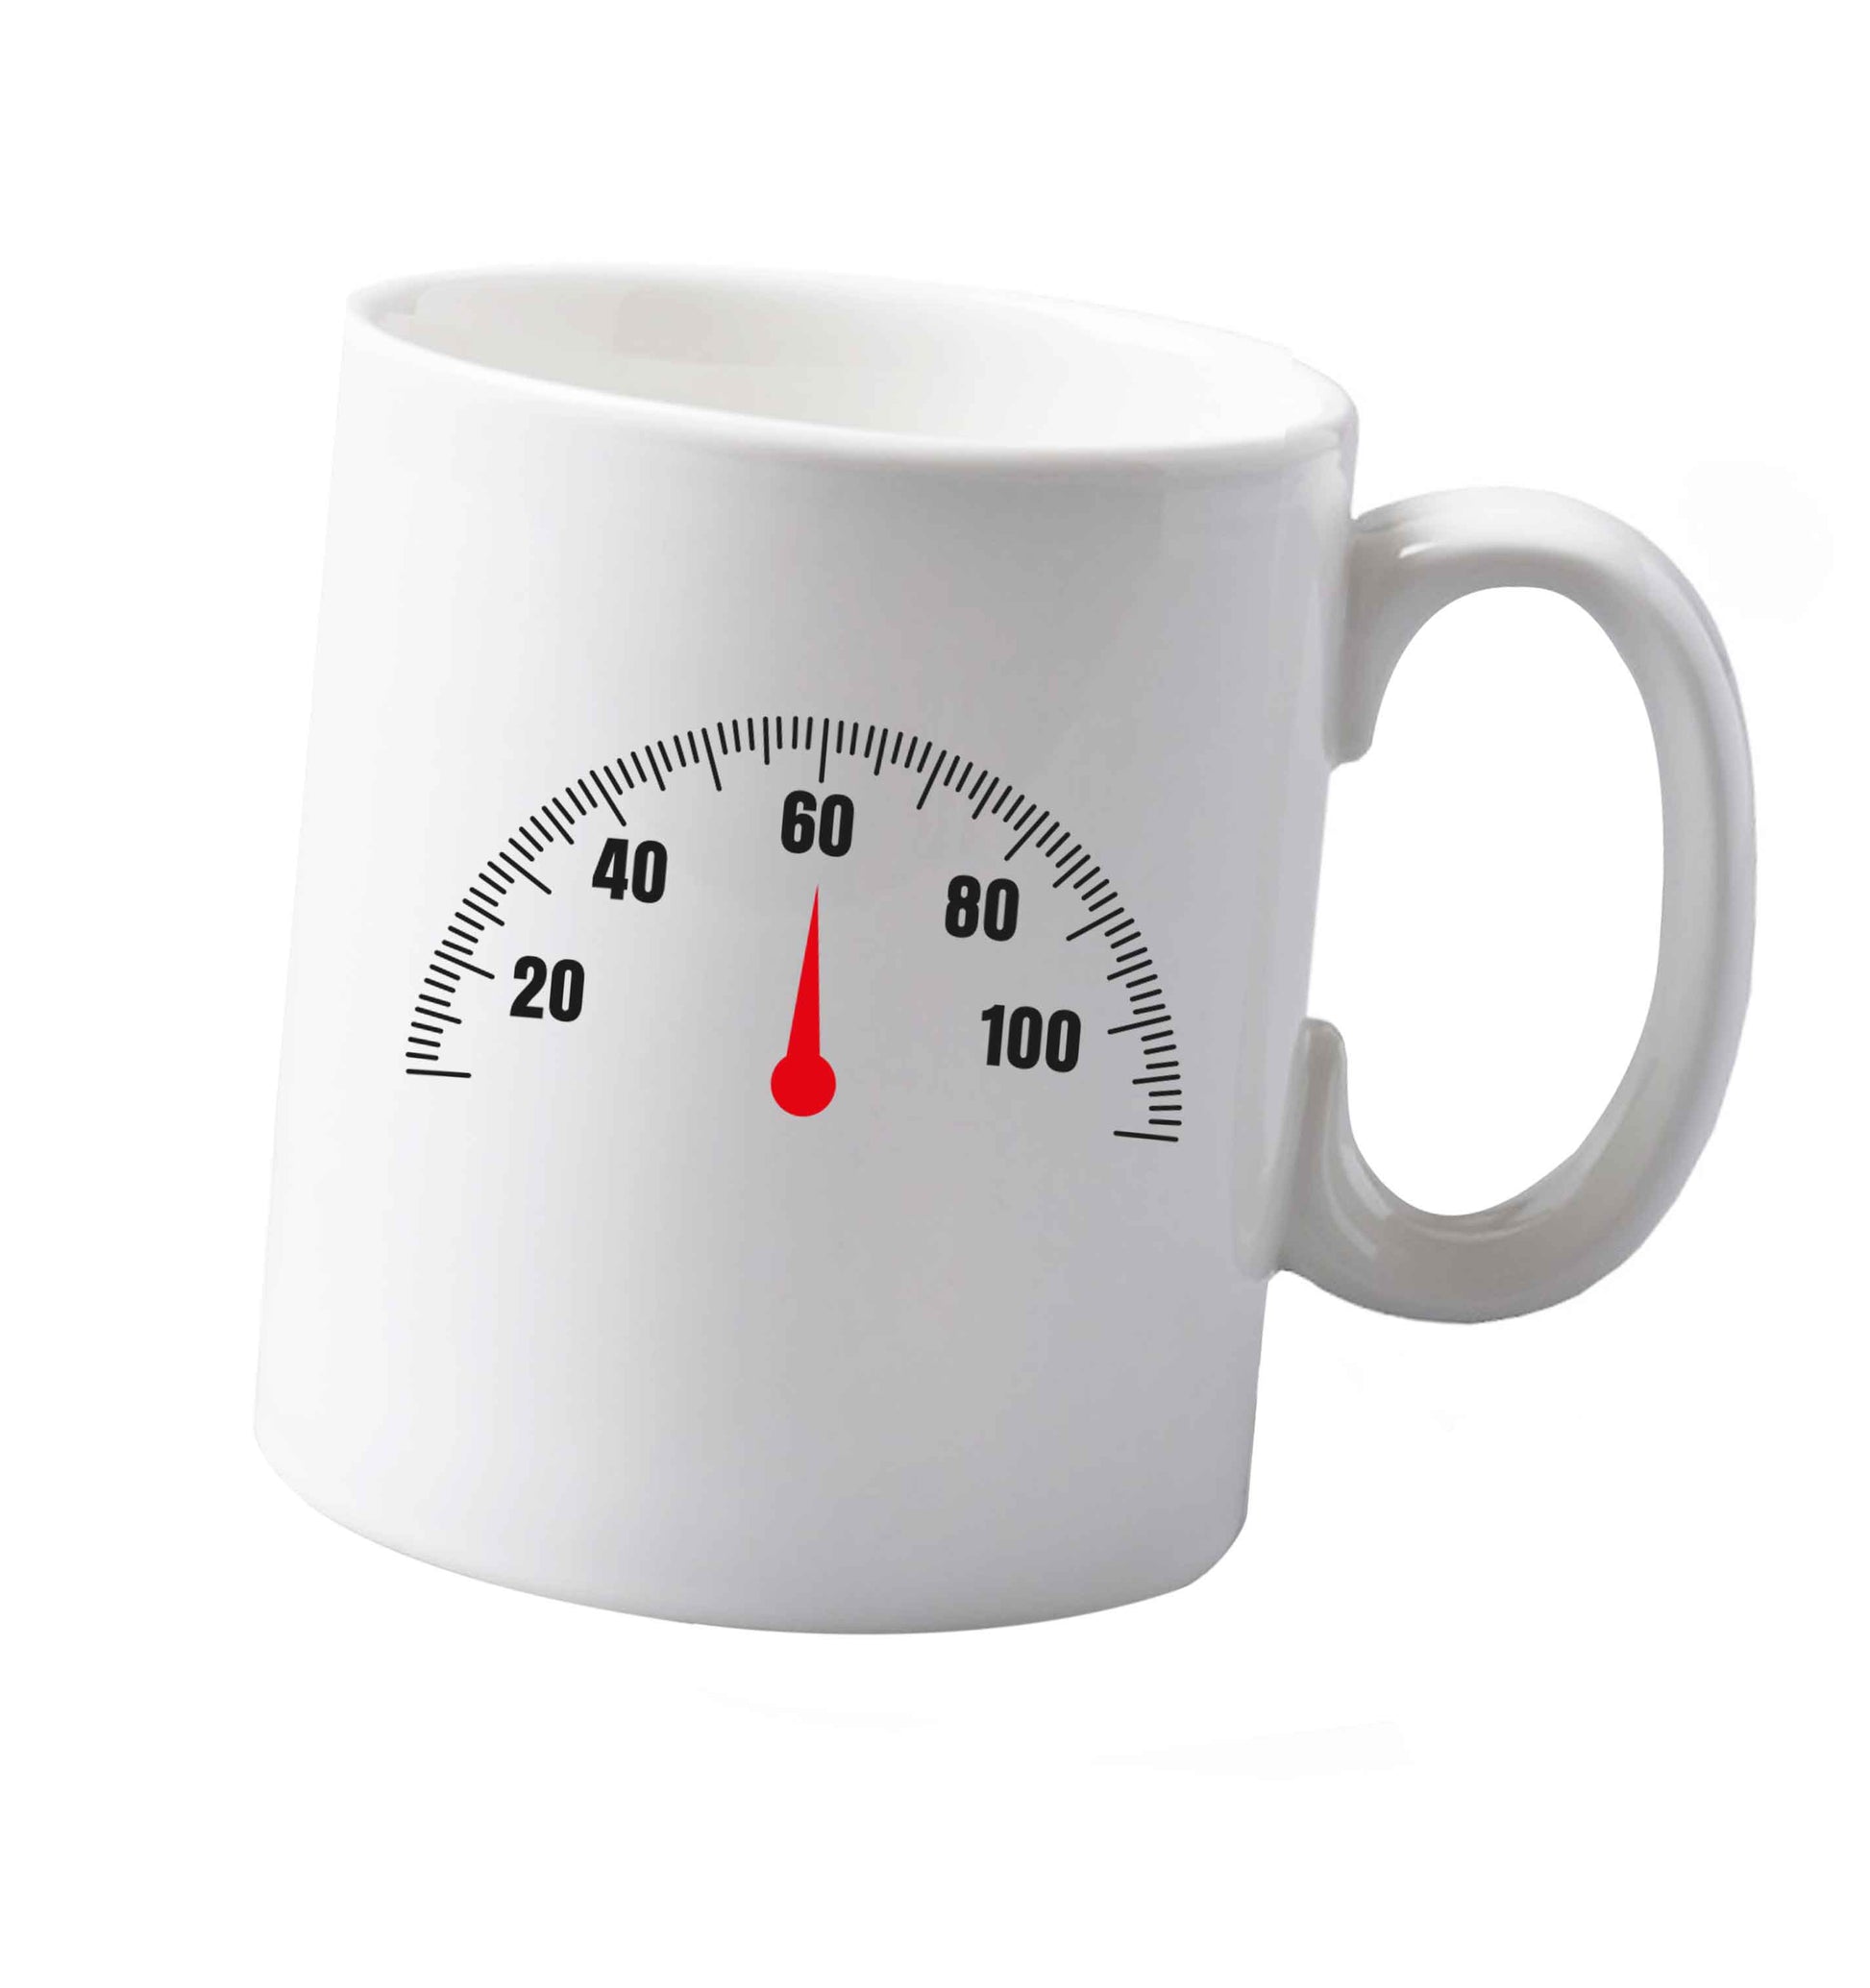 10 oz Speed dial 60 ceramic mug both sides